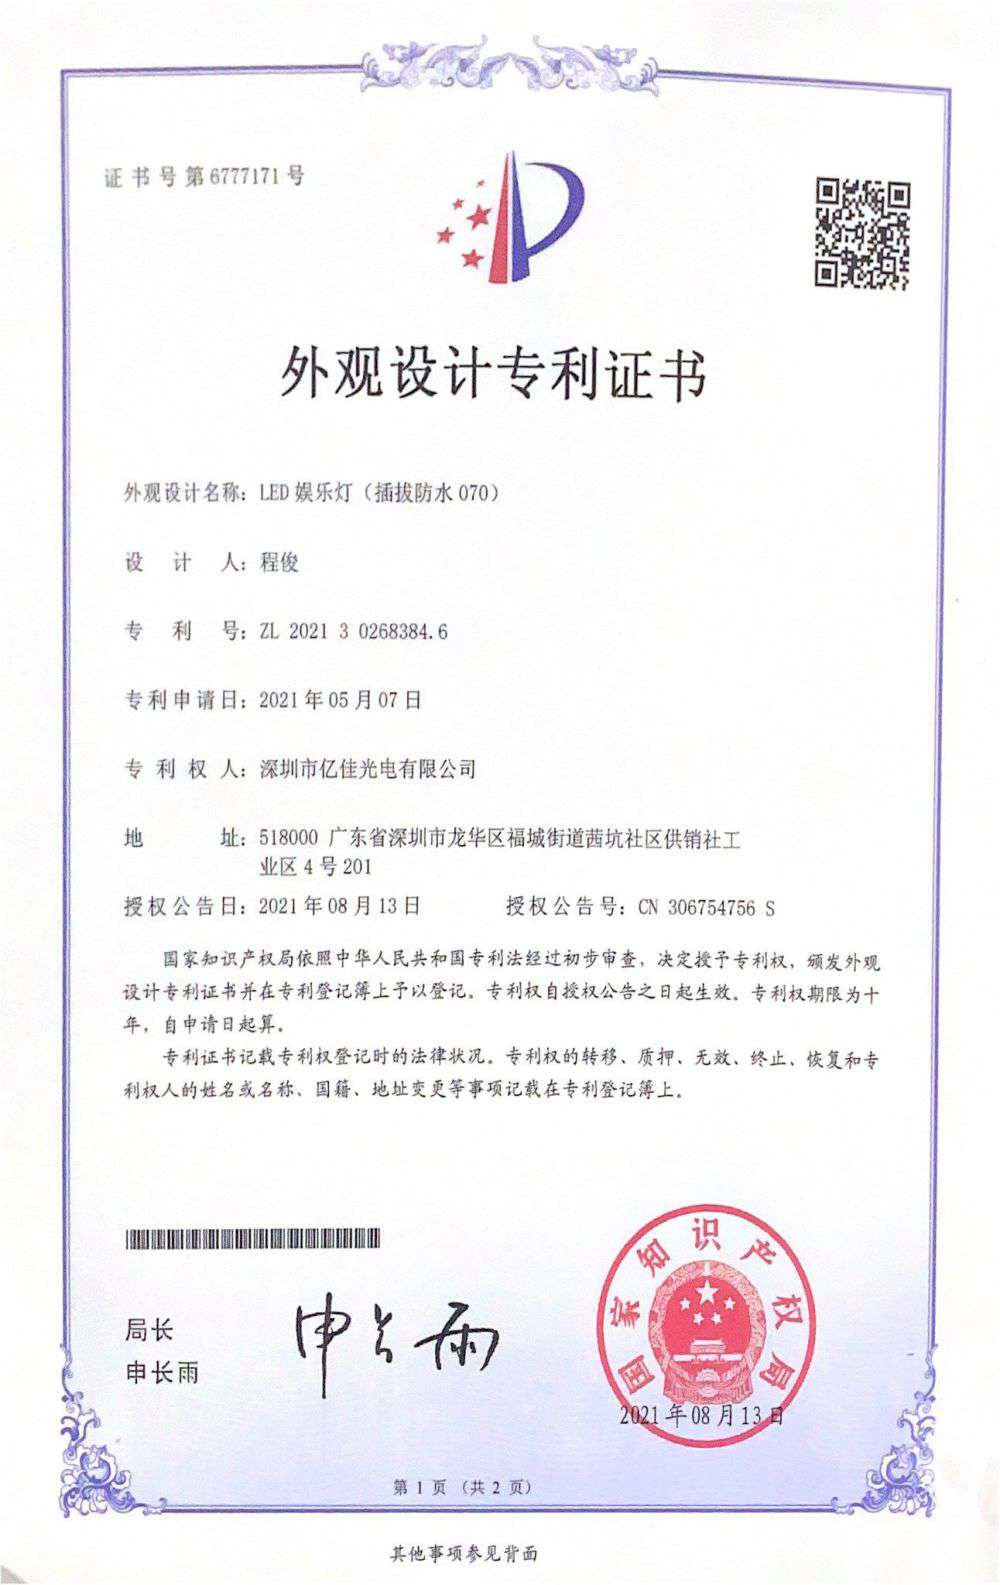 深圳市k8凯发光电有限公司LED娱乐灯070获得外观设计专利证书